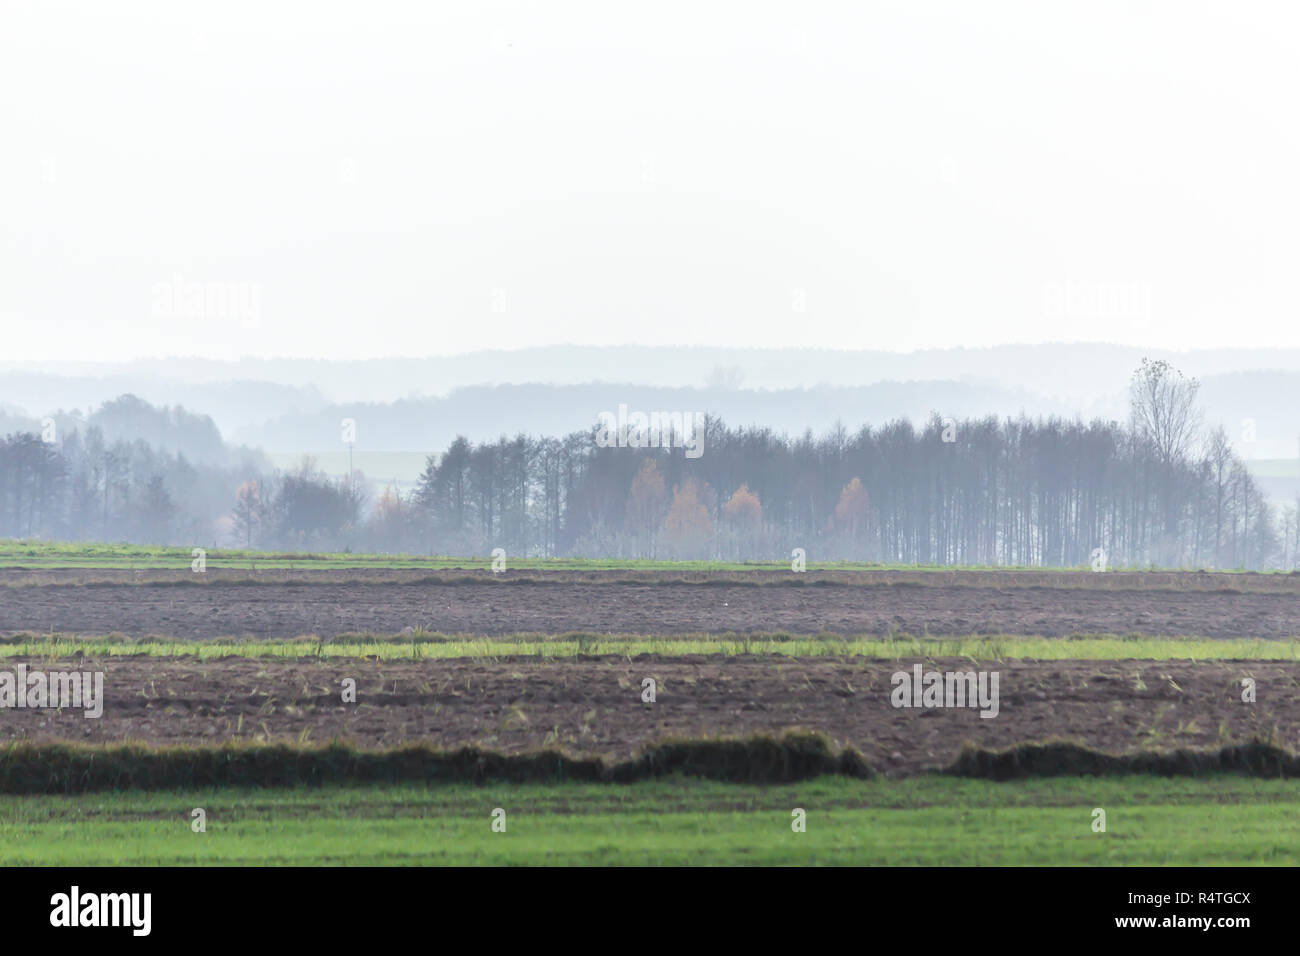 In autunno le foreste nella nebbia in background. Campi arati e prati verdi in primo piano. Podlasie, Polonia. Foto Stock